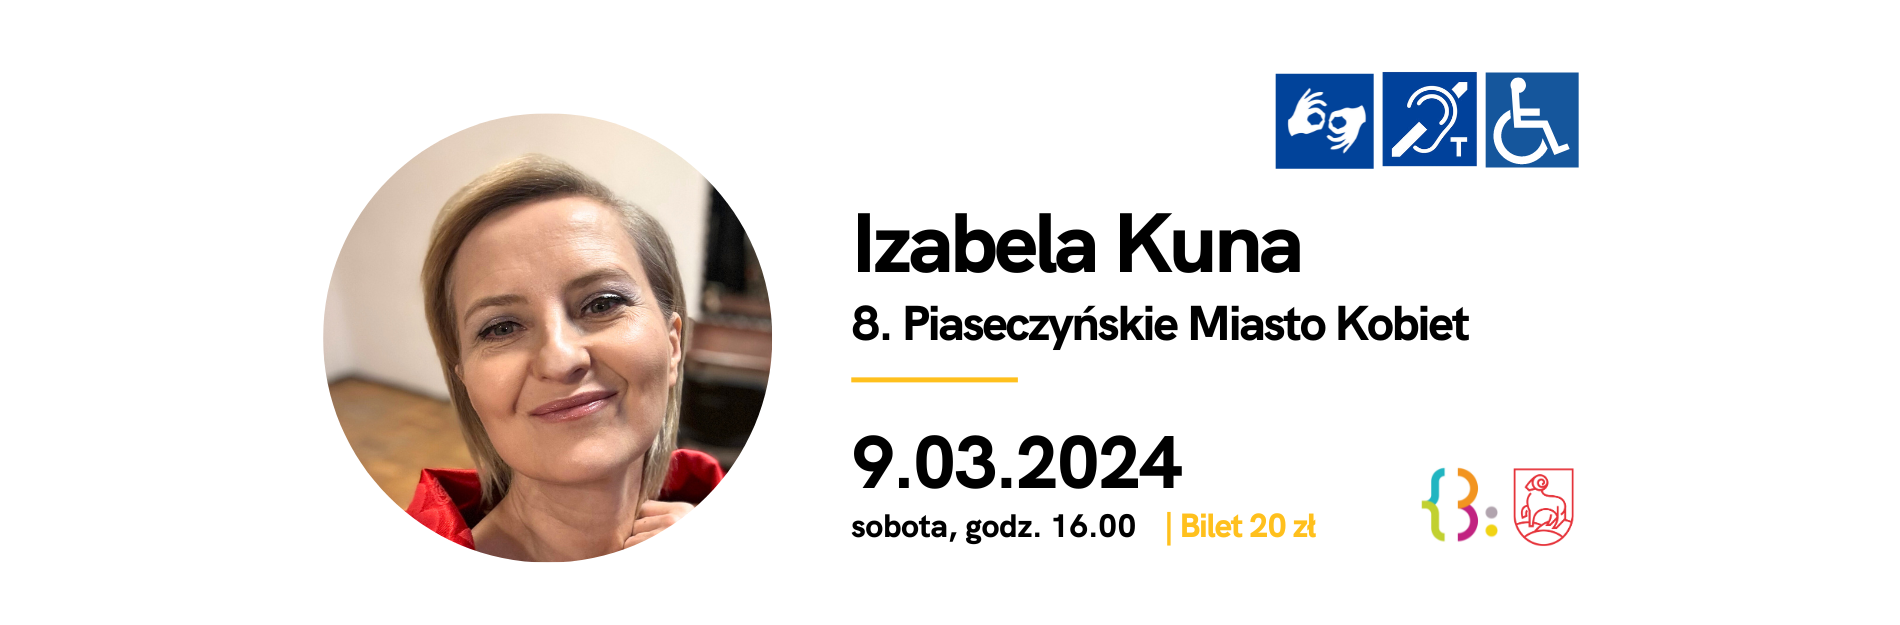 Izabela Kuna - Spotkanie w Piasecznie